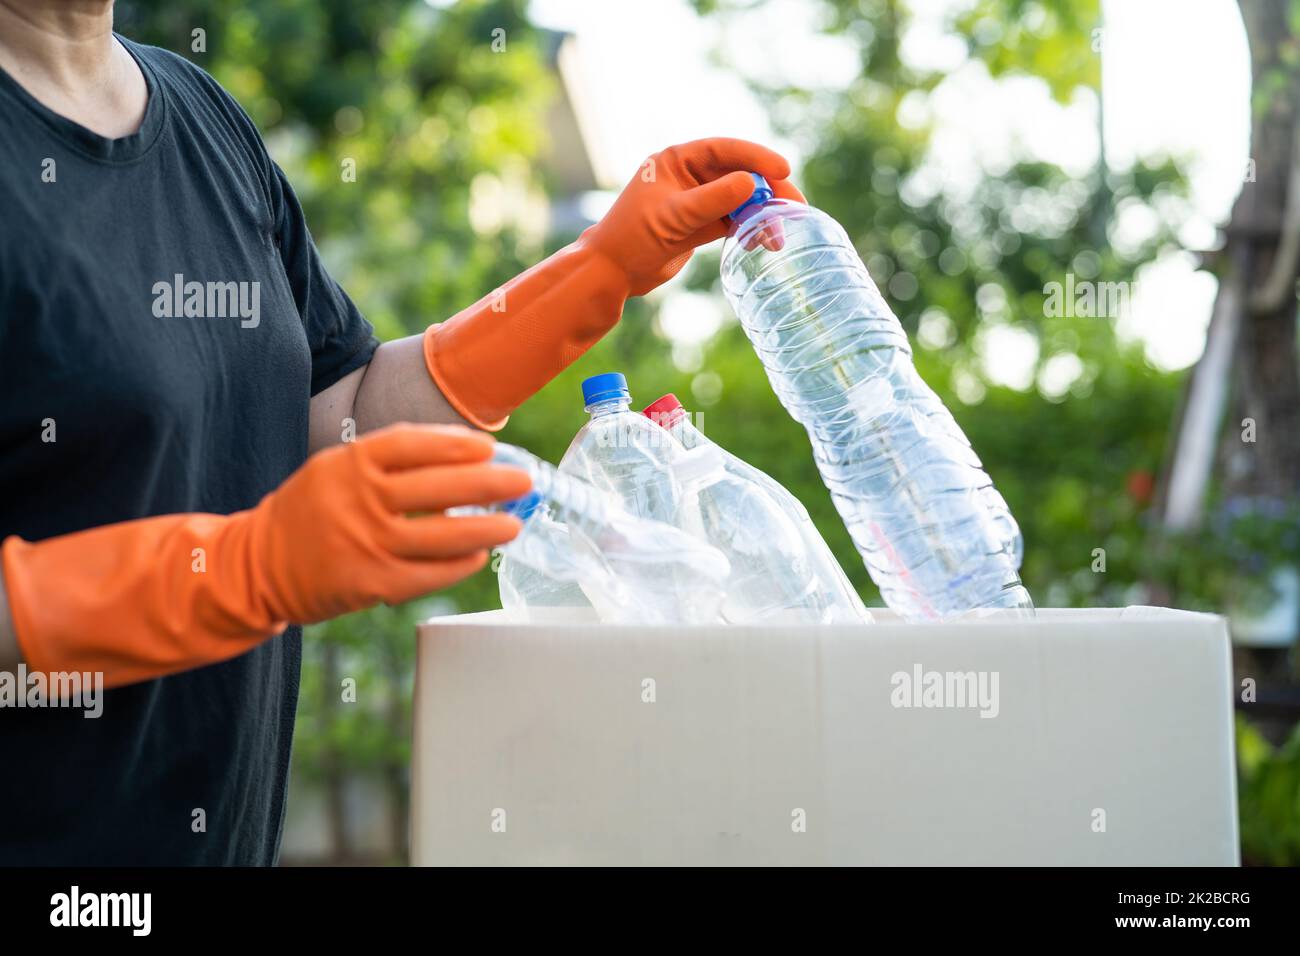 La voluntaria asiática lleva botellas de plástico de agua a la basura de la caja de basura en el parque, recicle el concepto de ecología del entorno de residuos. Foto de stock